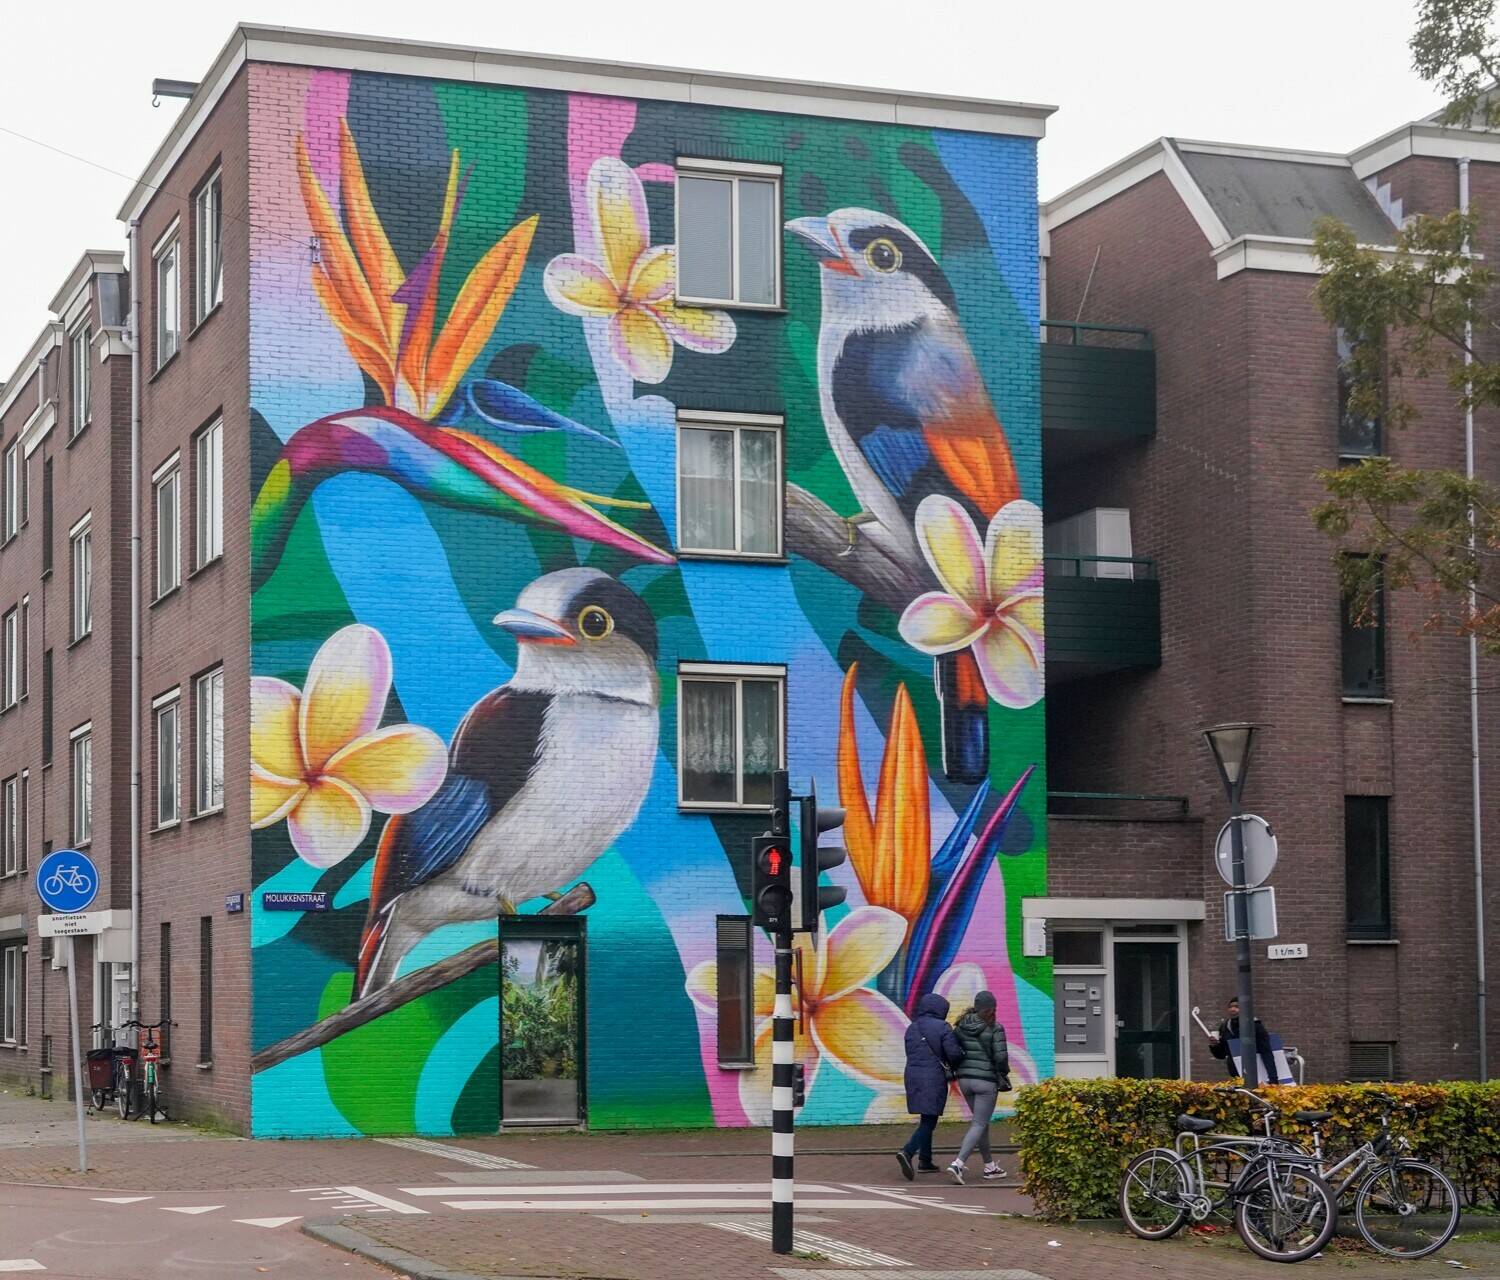 Amsterdamse straat met pand waarop muurschildering met kleurrijke tropische vogels en planten